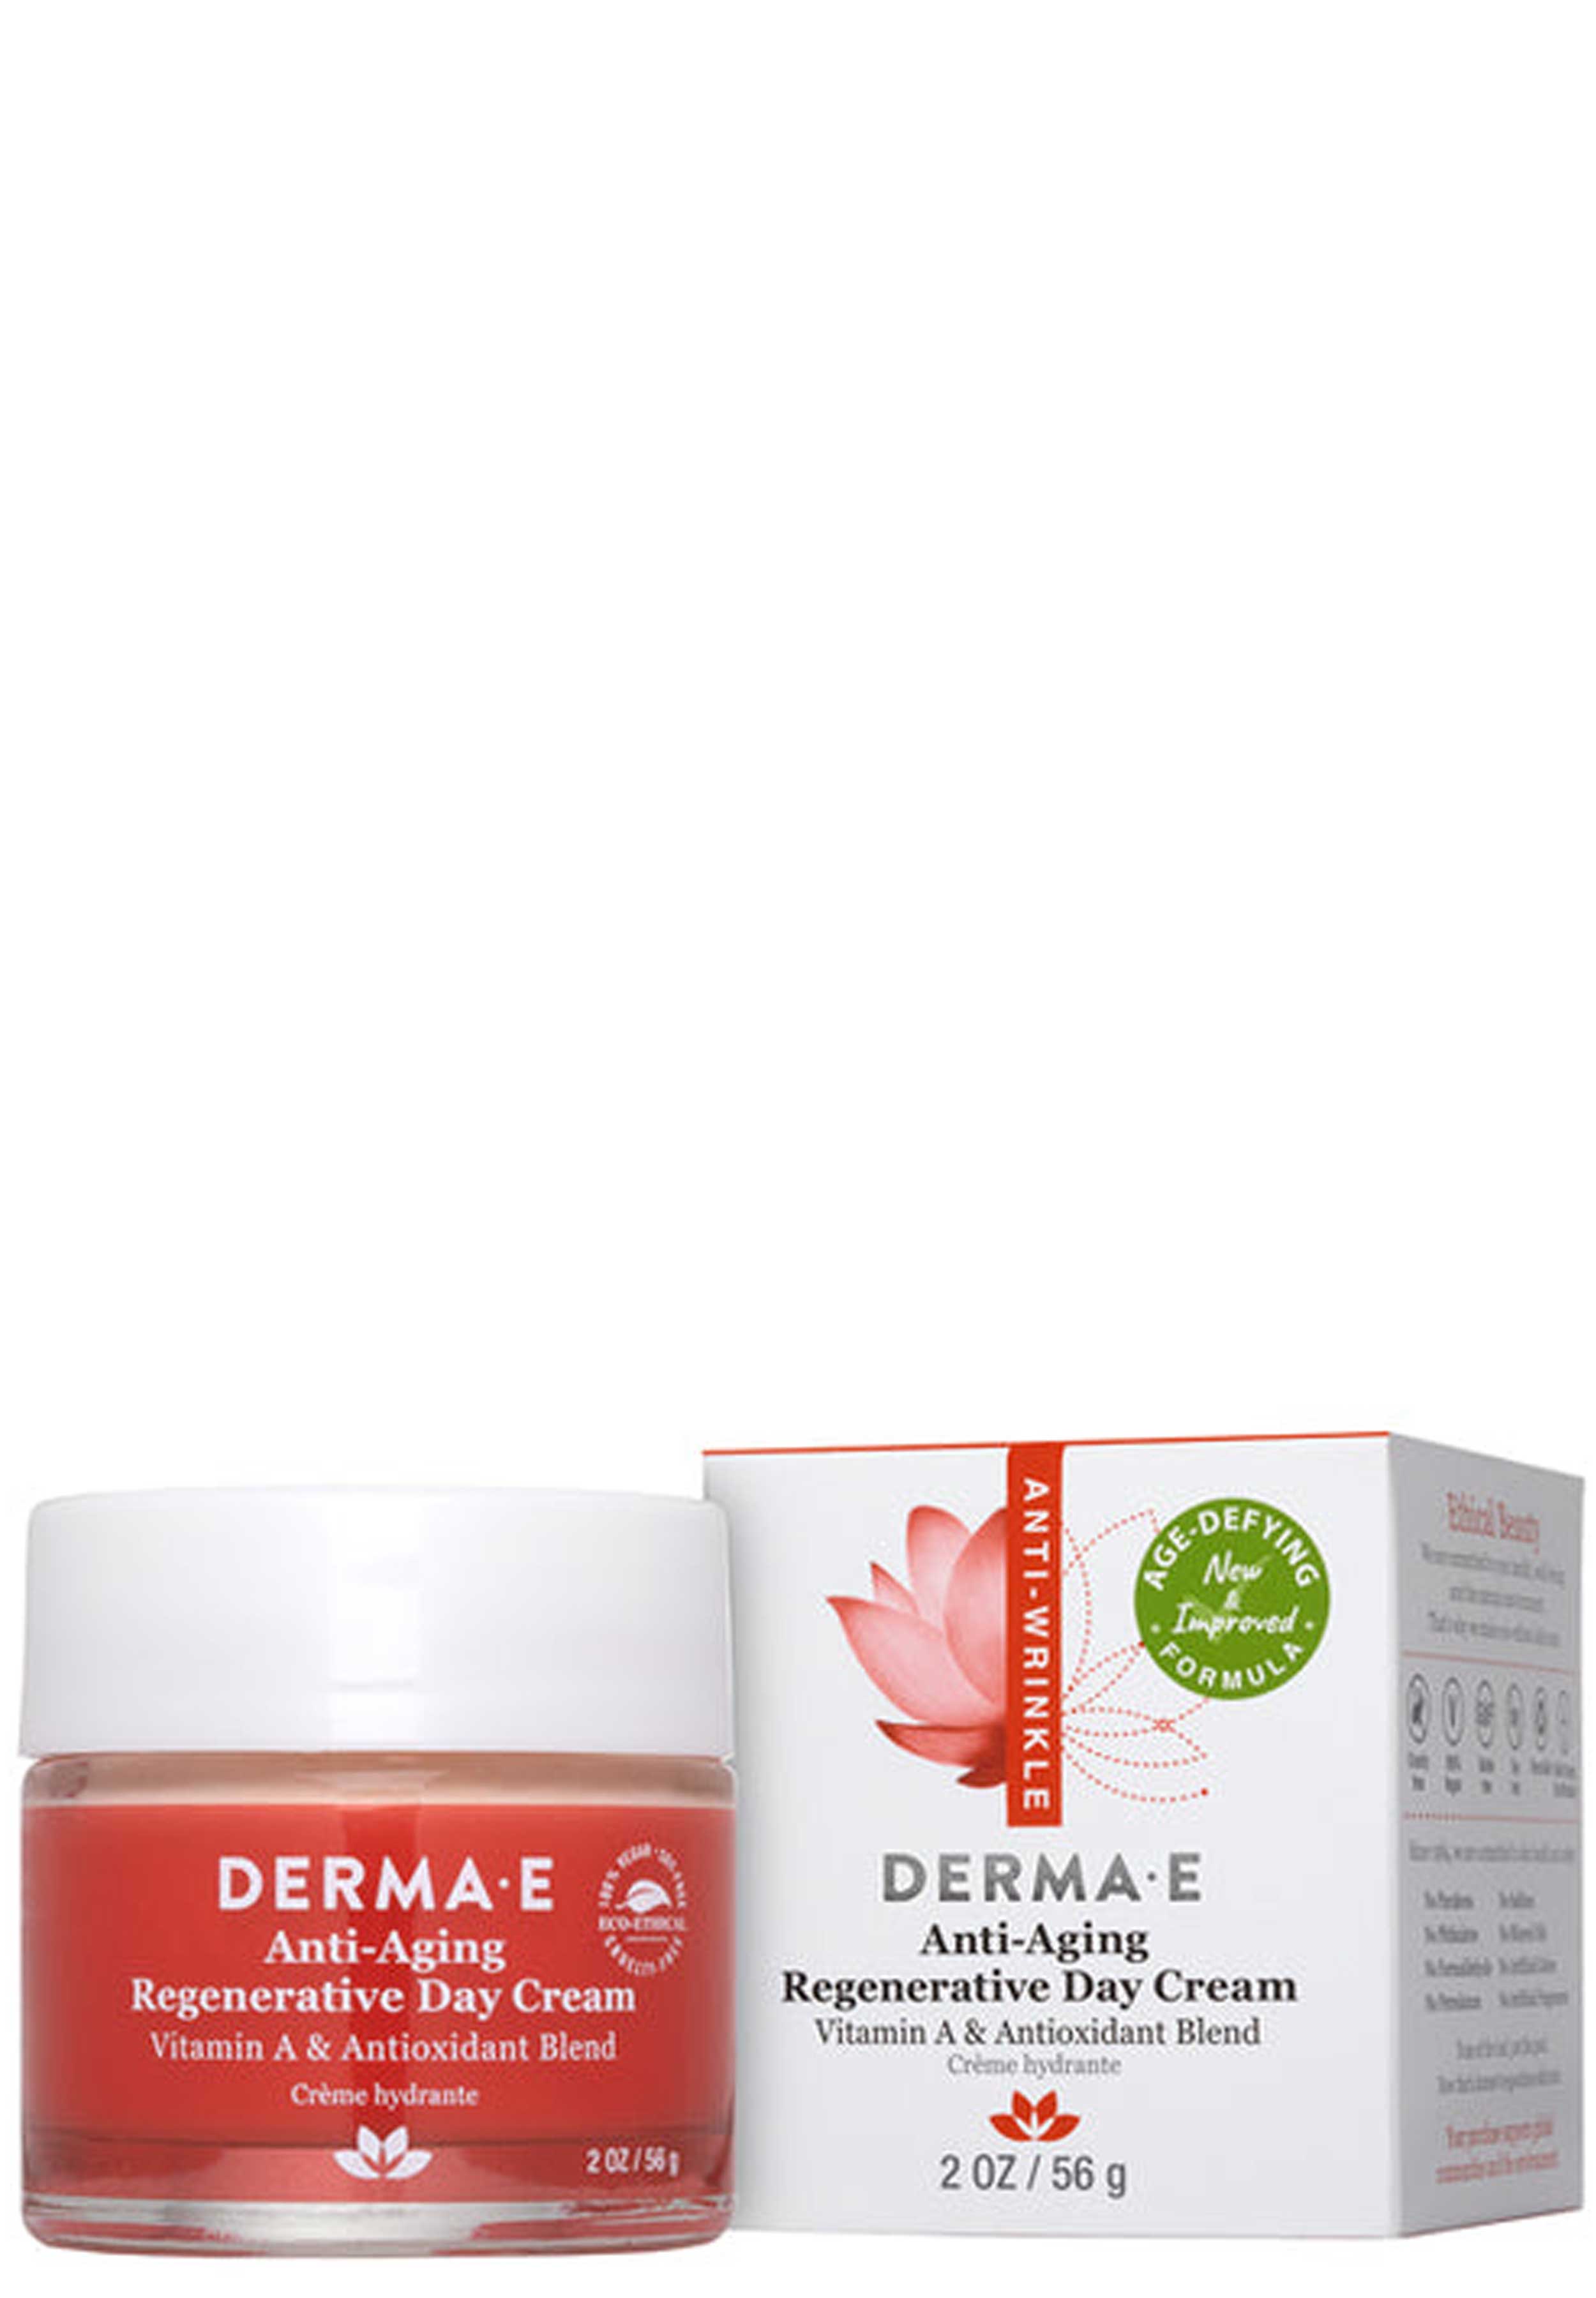 DermaE Natural Bodycare Anti-Aging Regenerative Day Cream